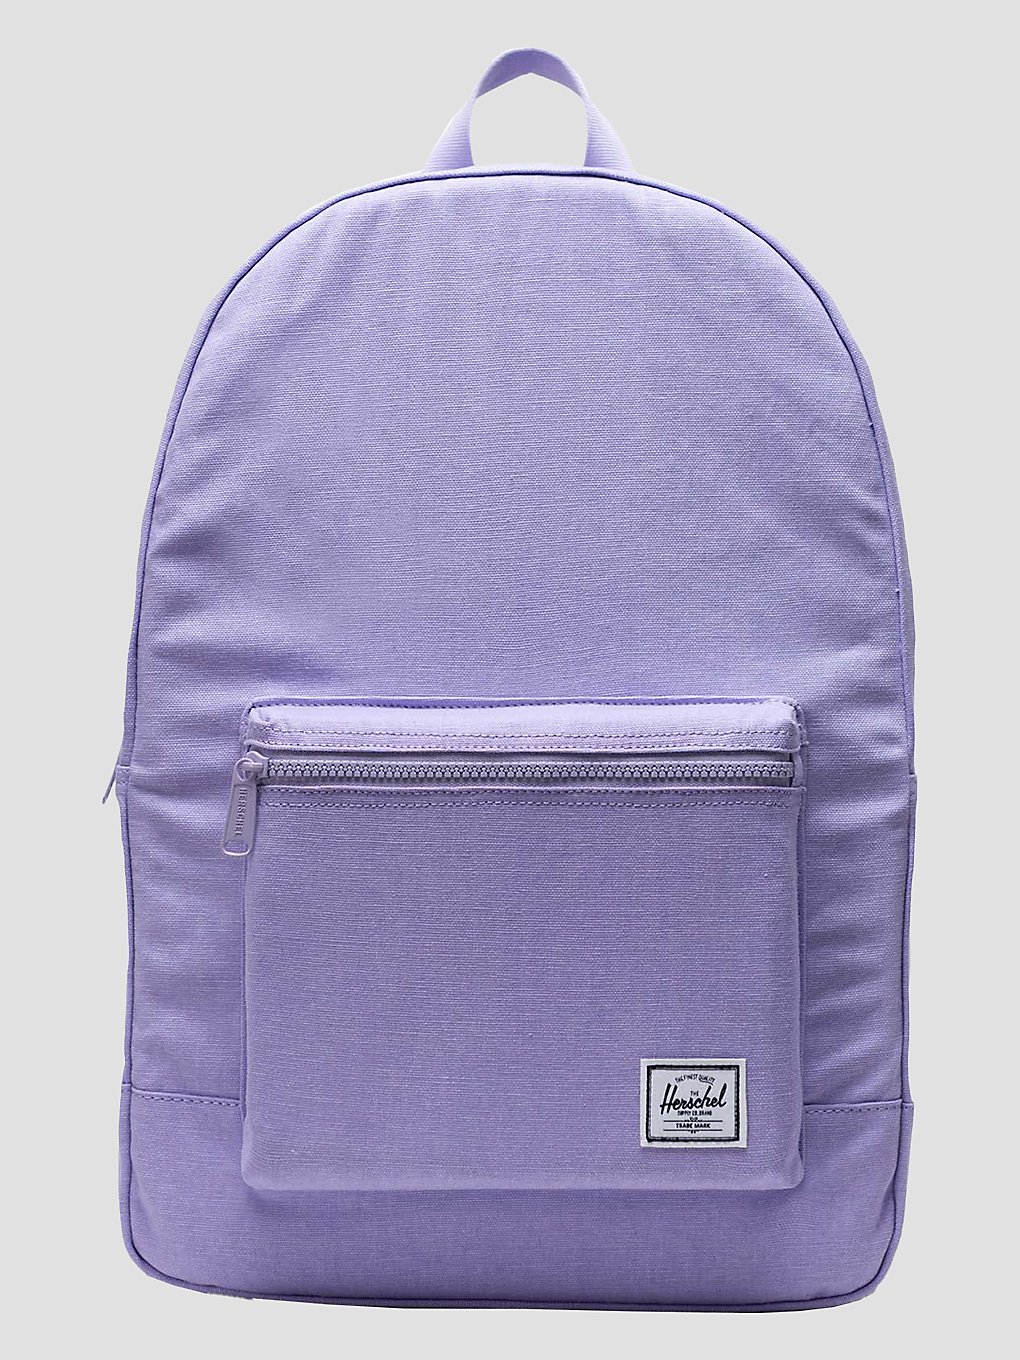 Herschel Daypack Rucksack lavender kaufen